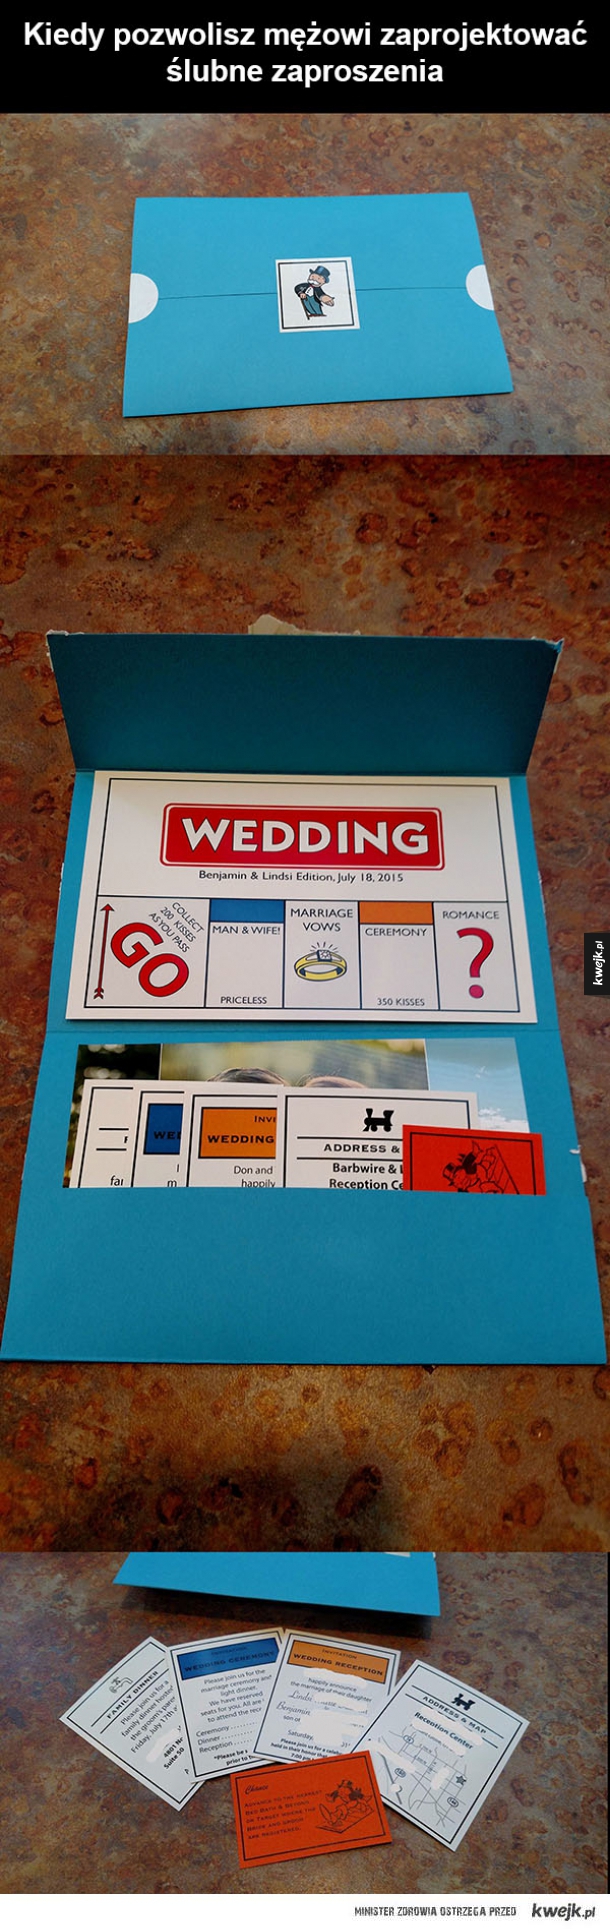 Zagrasz na ślubie w Monopoly